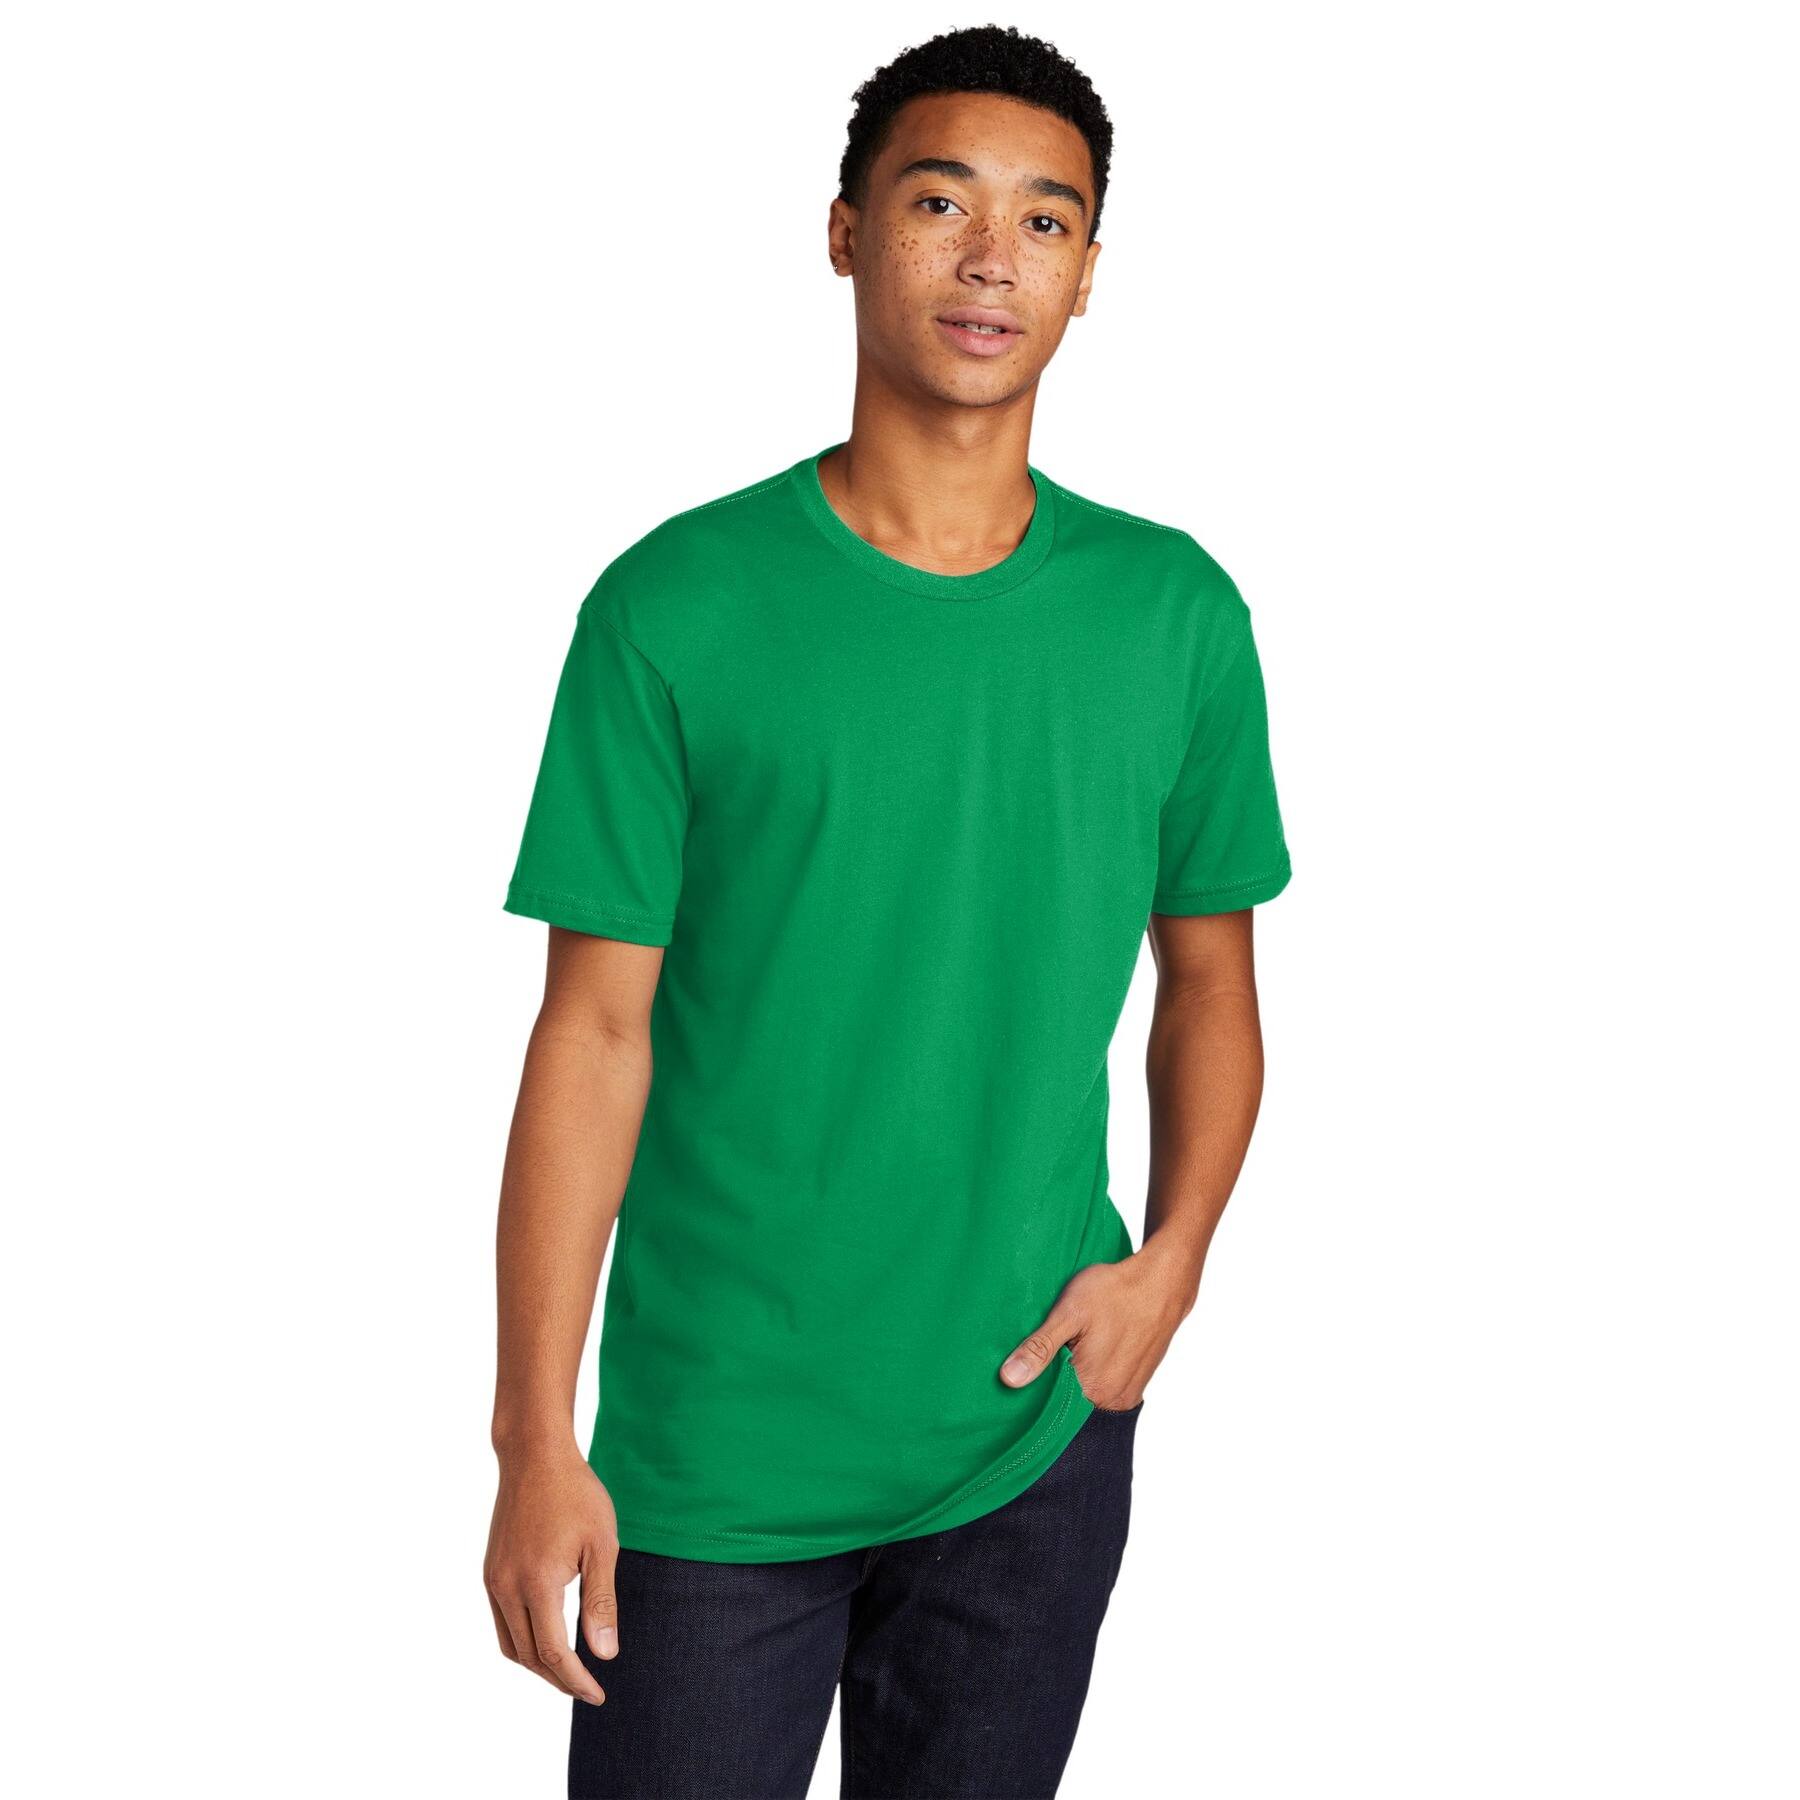 Next Level Unisex Adult Cotton T-Shirt | Michaels